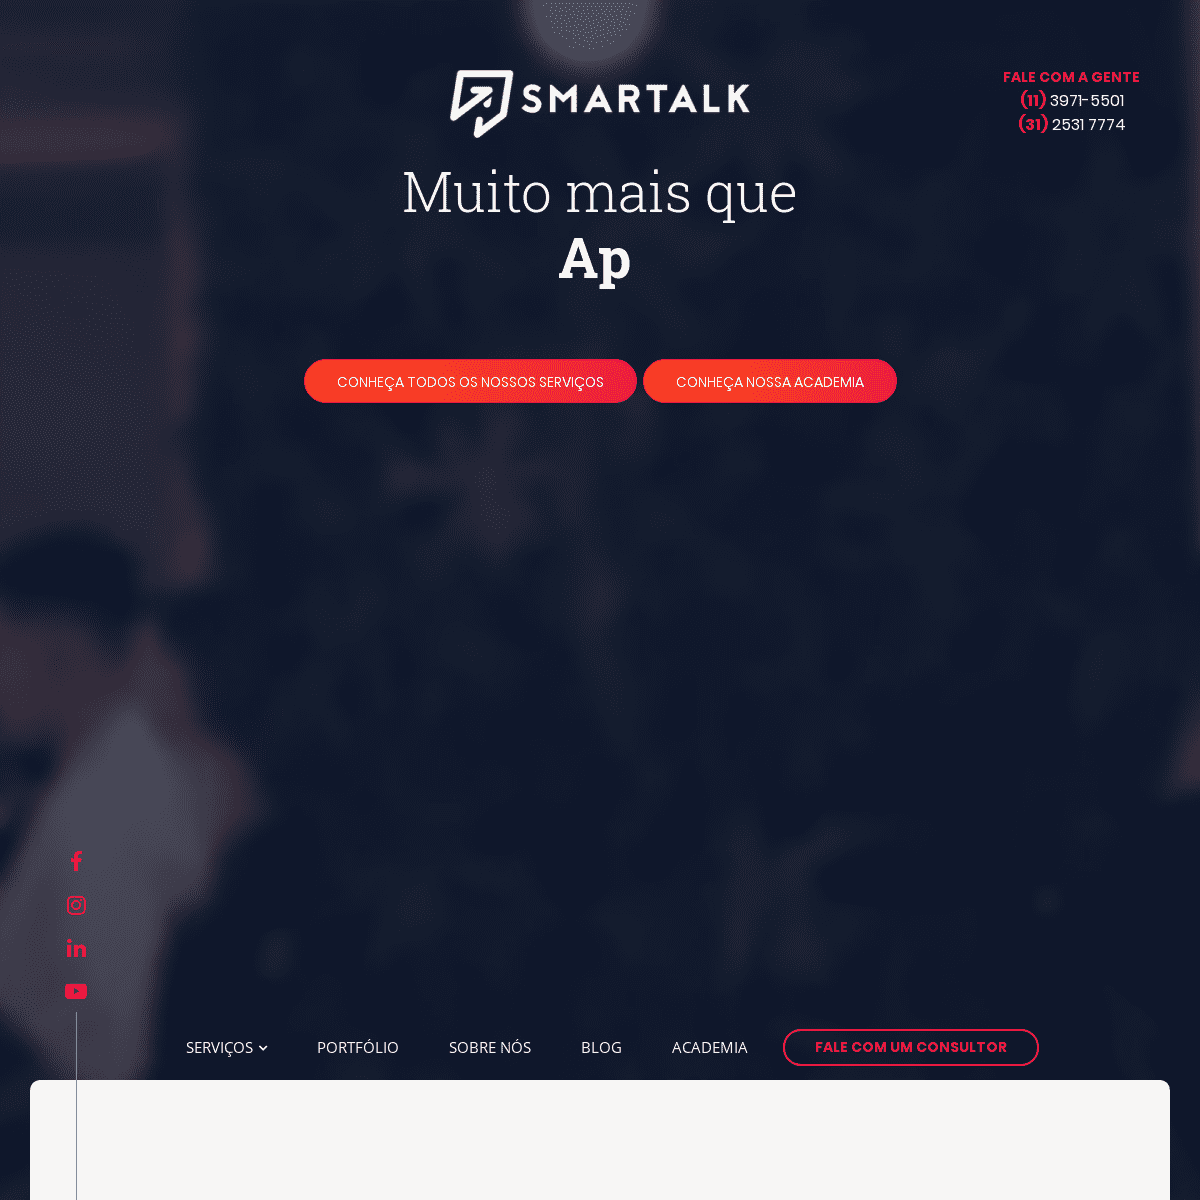 A complete backup of smartalk.com.br